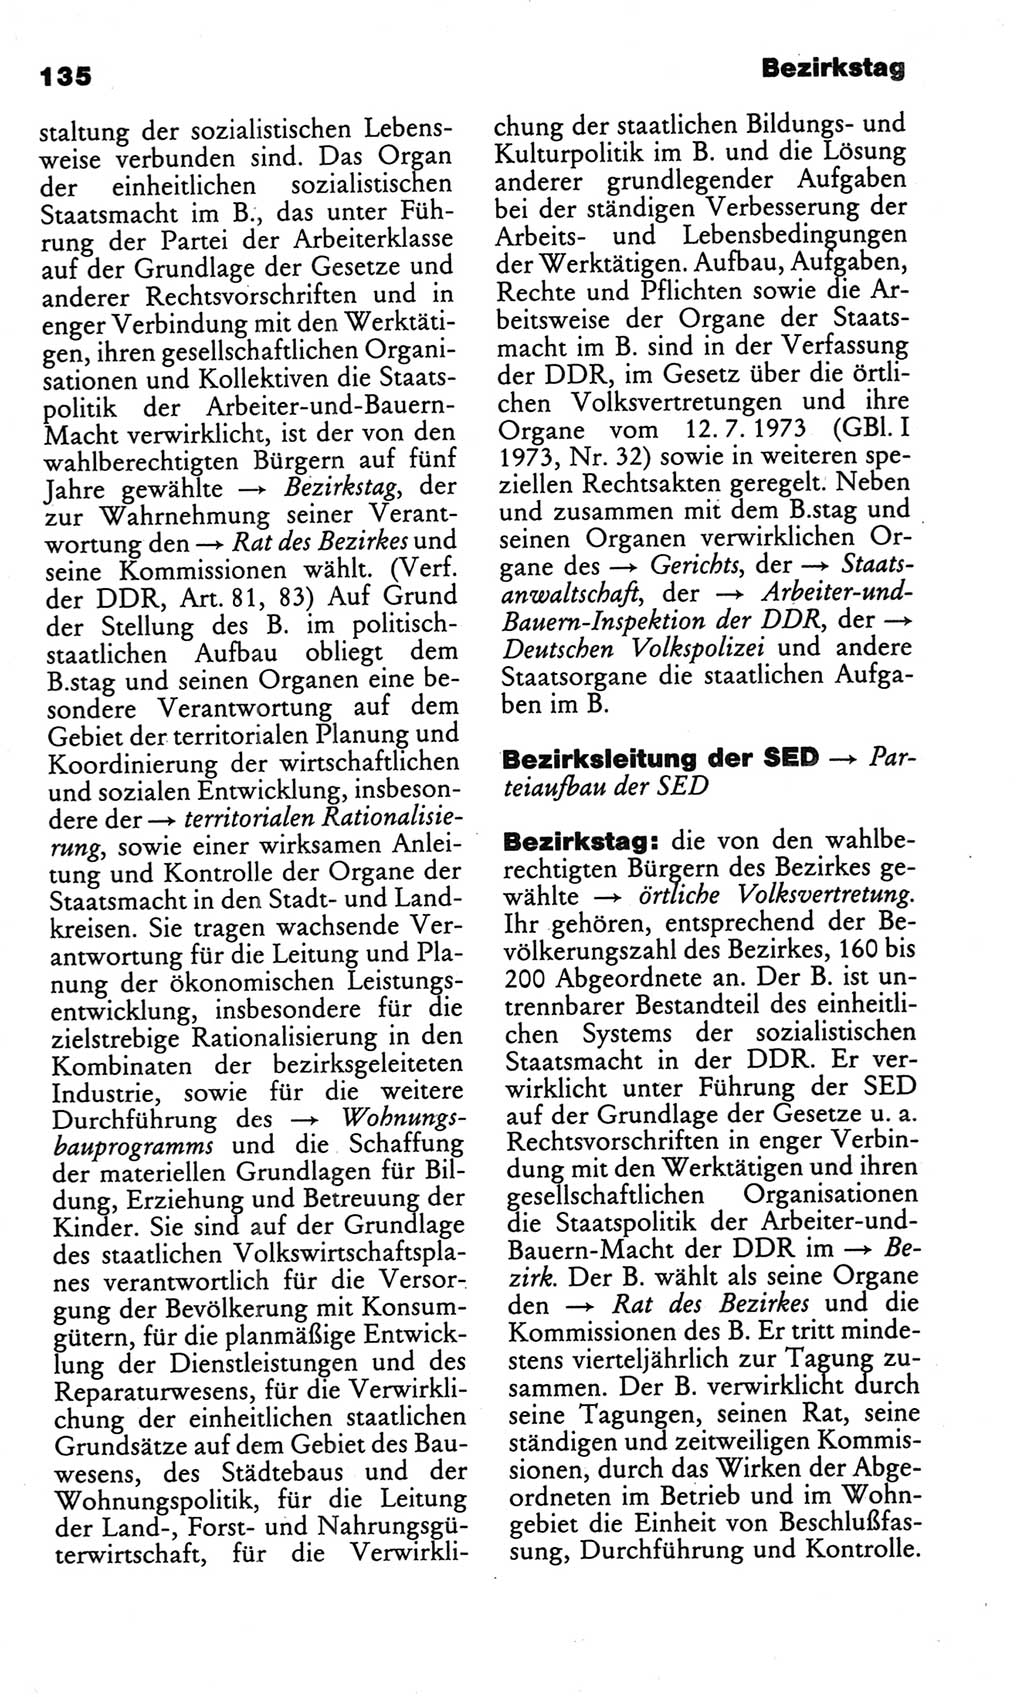 Kleines politisches Wörterbuch [Deutsche Demokratische Republik (DDR)] 1986, Seite 135 (Kl. pol. Wb. DDR 1986, S. 135)